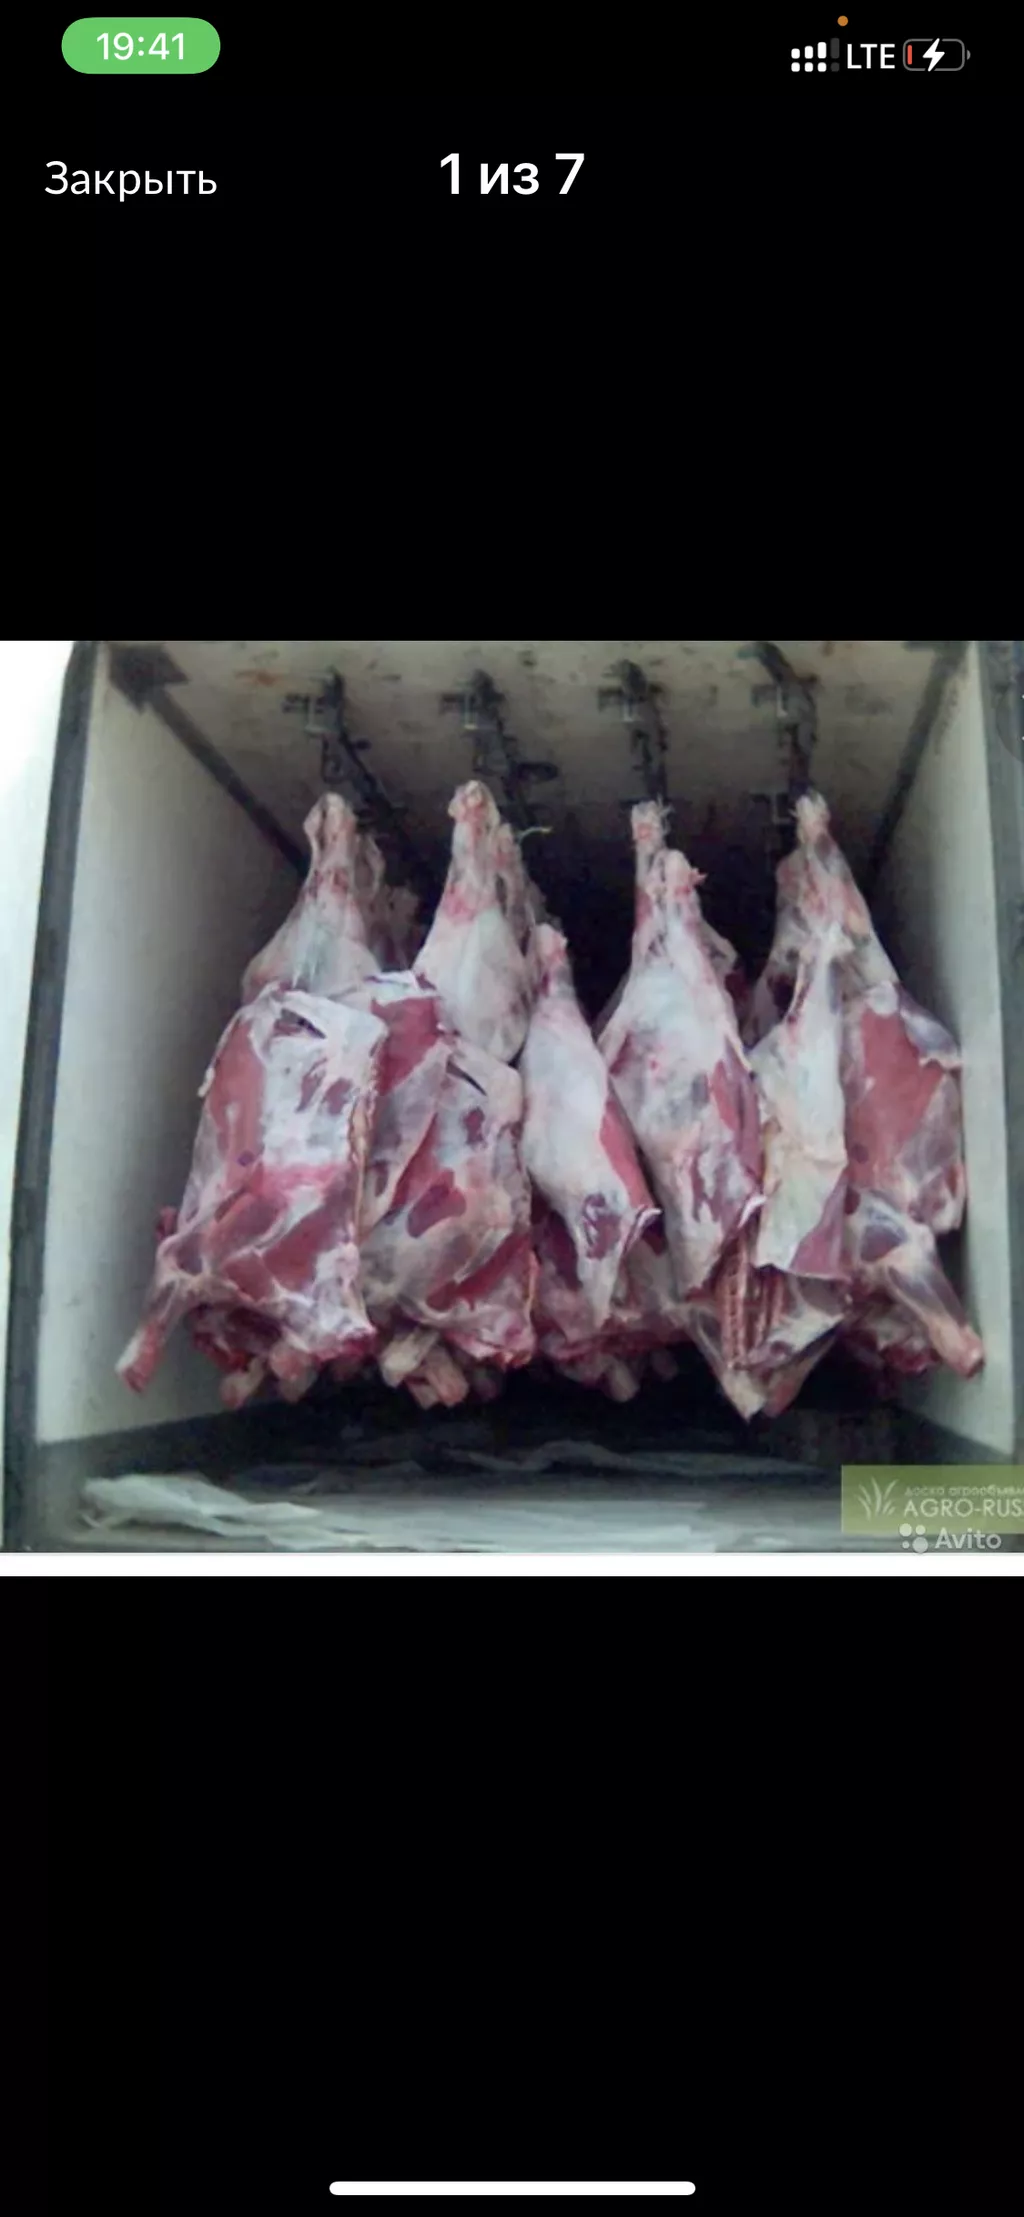 Фотография продукта Быки коровы телятина халяль в полутушах